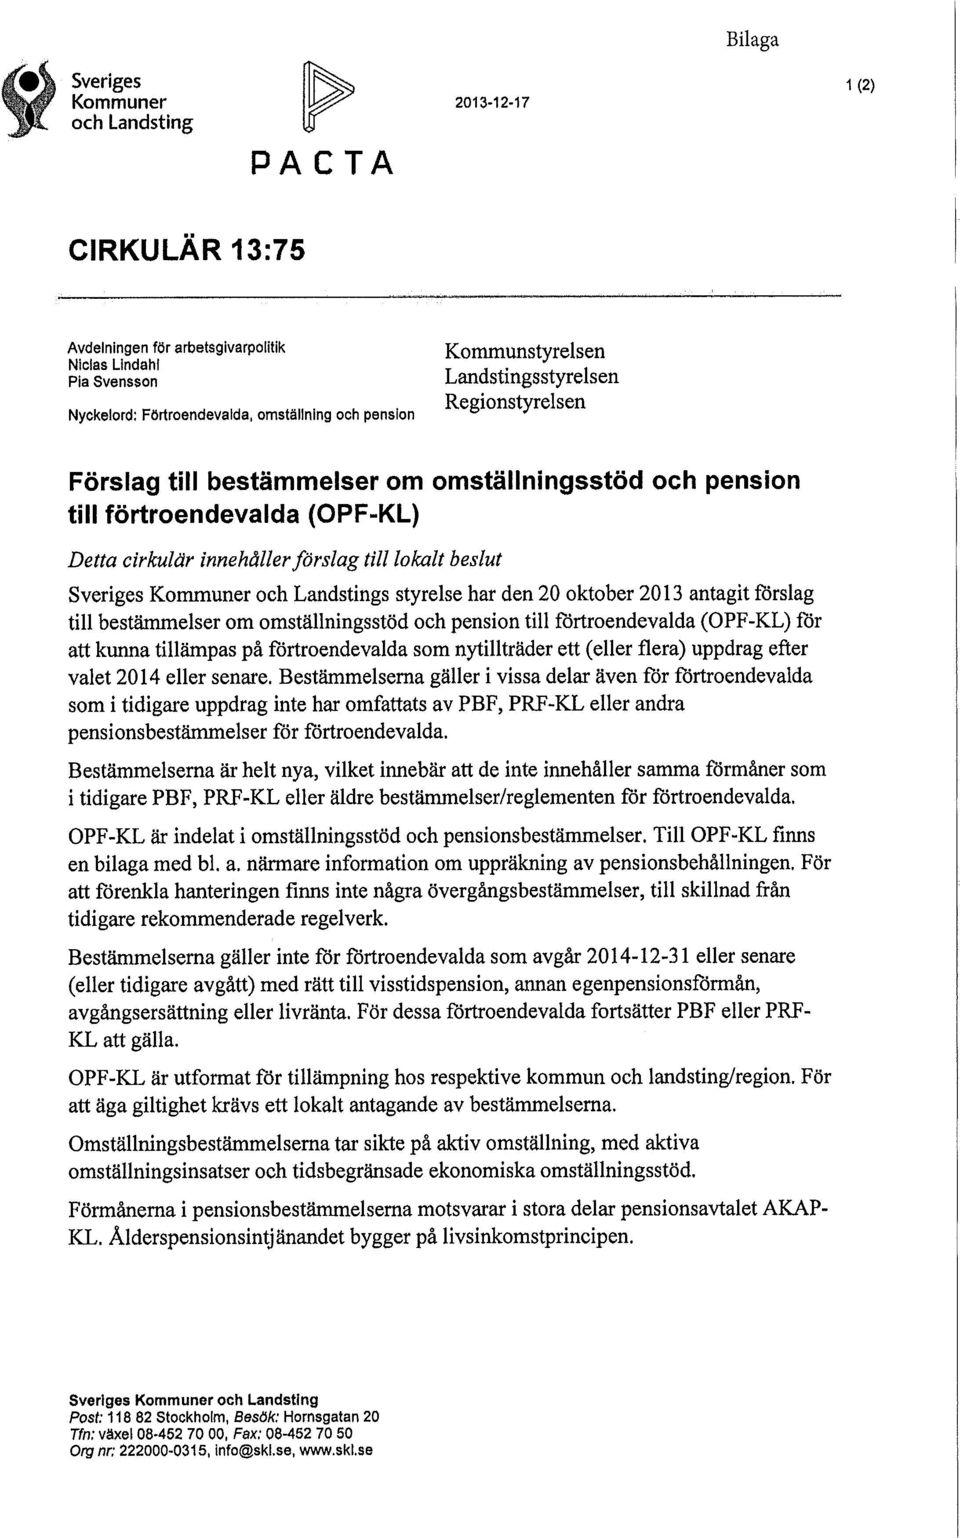 cirkulär innehåller förslag till lokalt beslut Sveriges Kommuner och Landstings styrelse har den 20 oktober 2013 antagit förslag till bestämmelser om omställningsstöd och pension till förtroendevalda